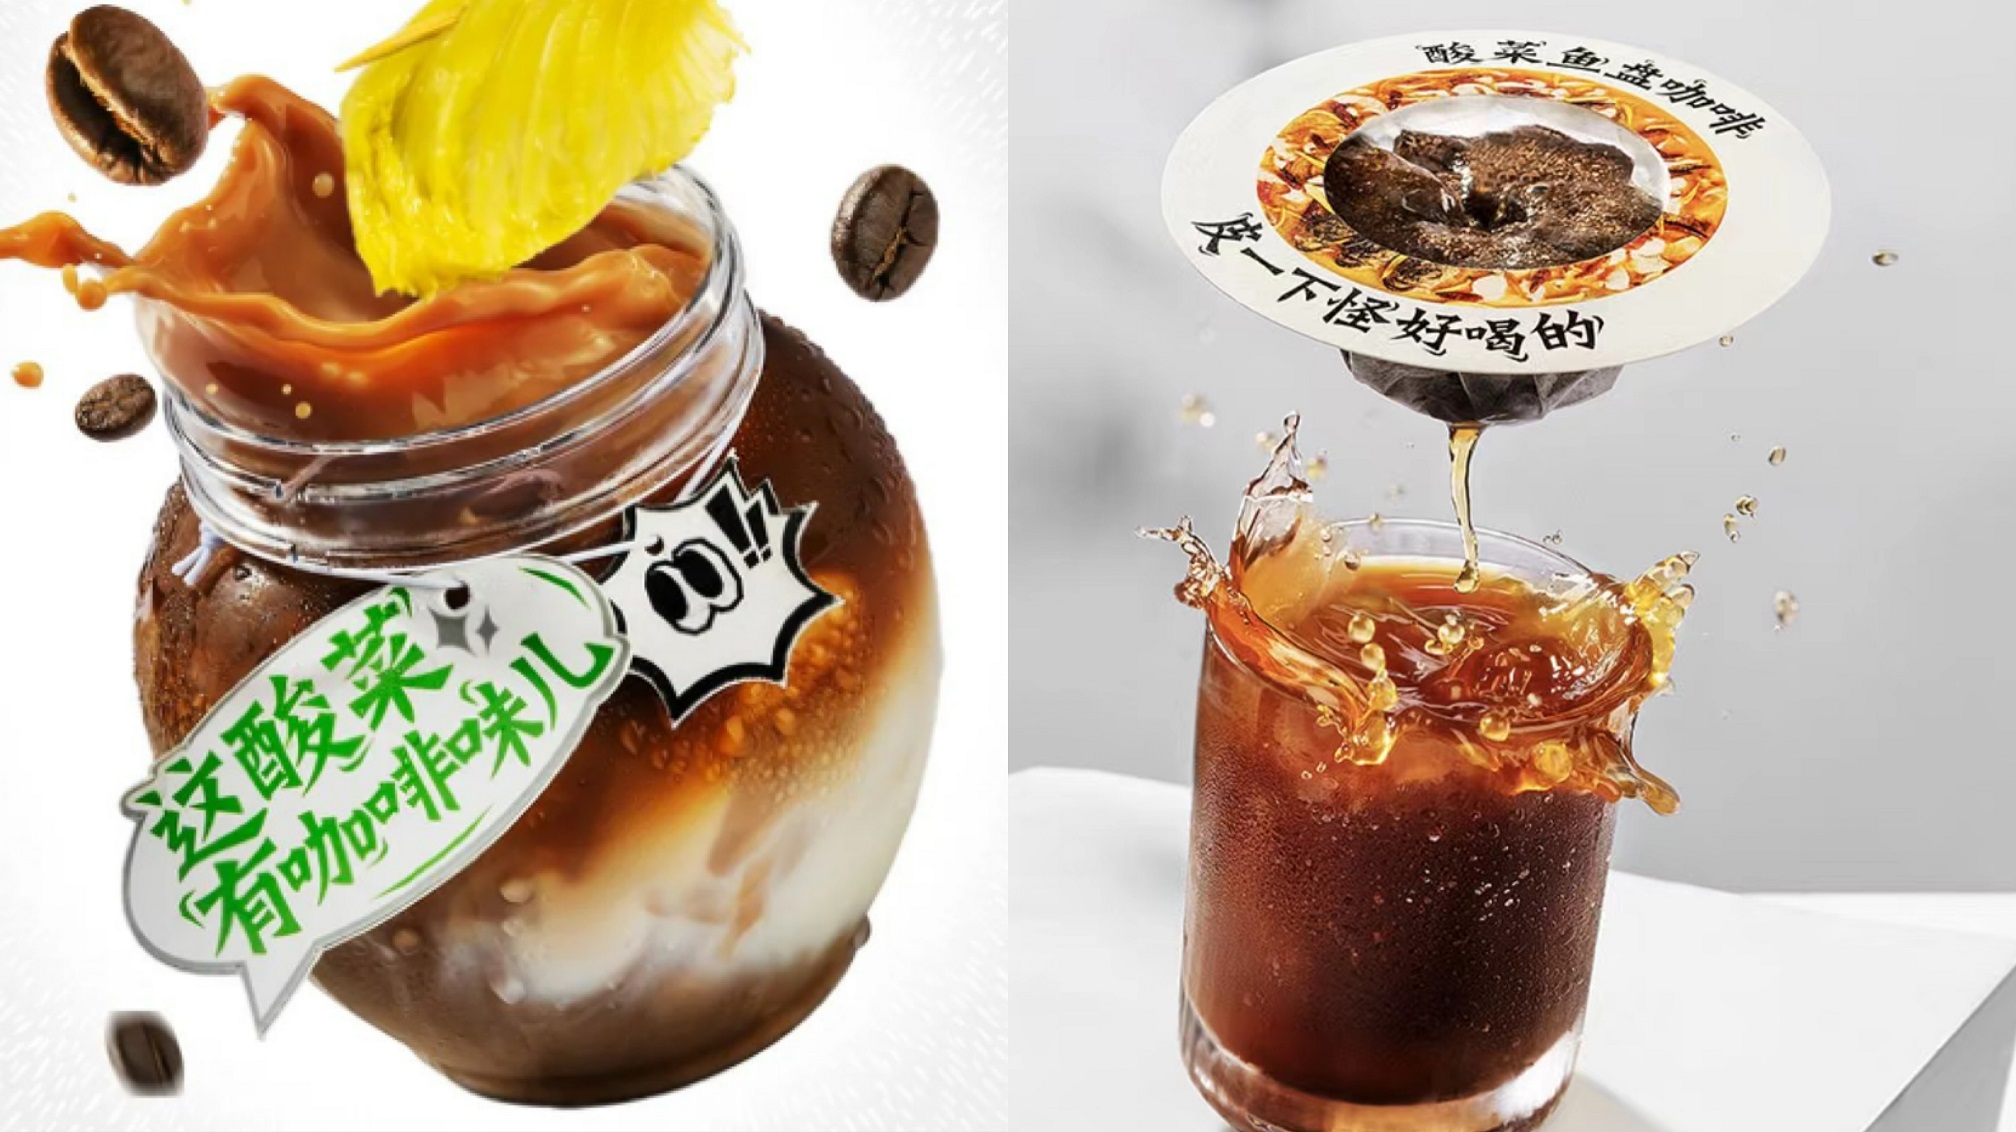 原汁酸菜拿铁（左）和酸菜鱼盘咖啡（右）